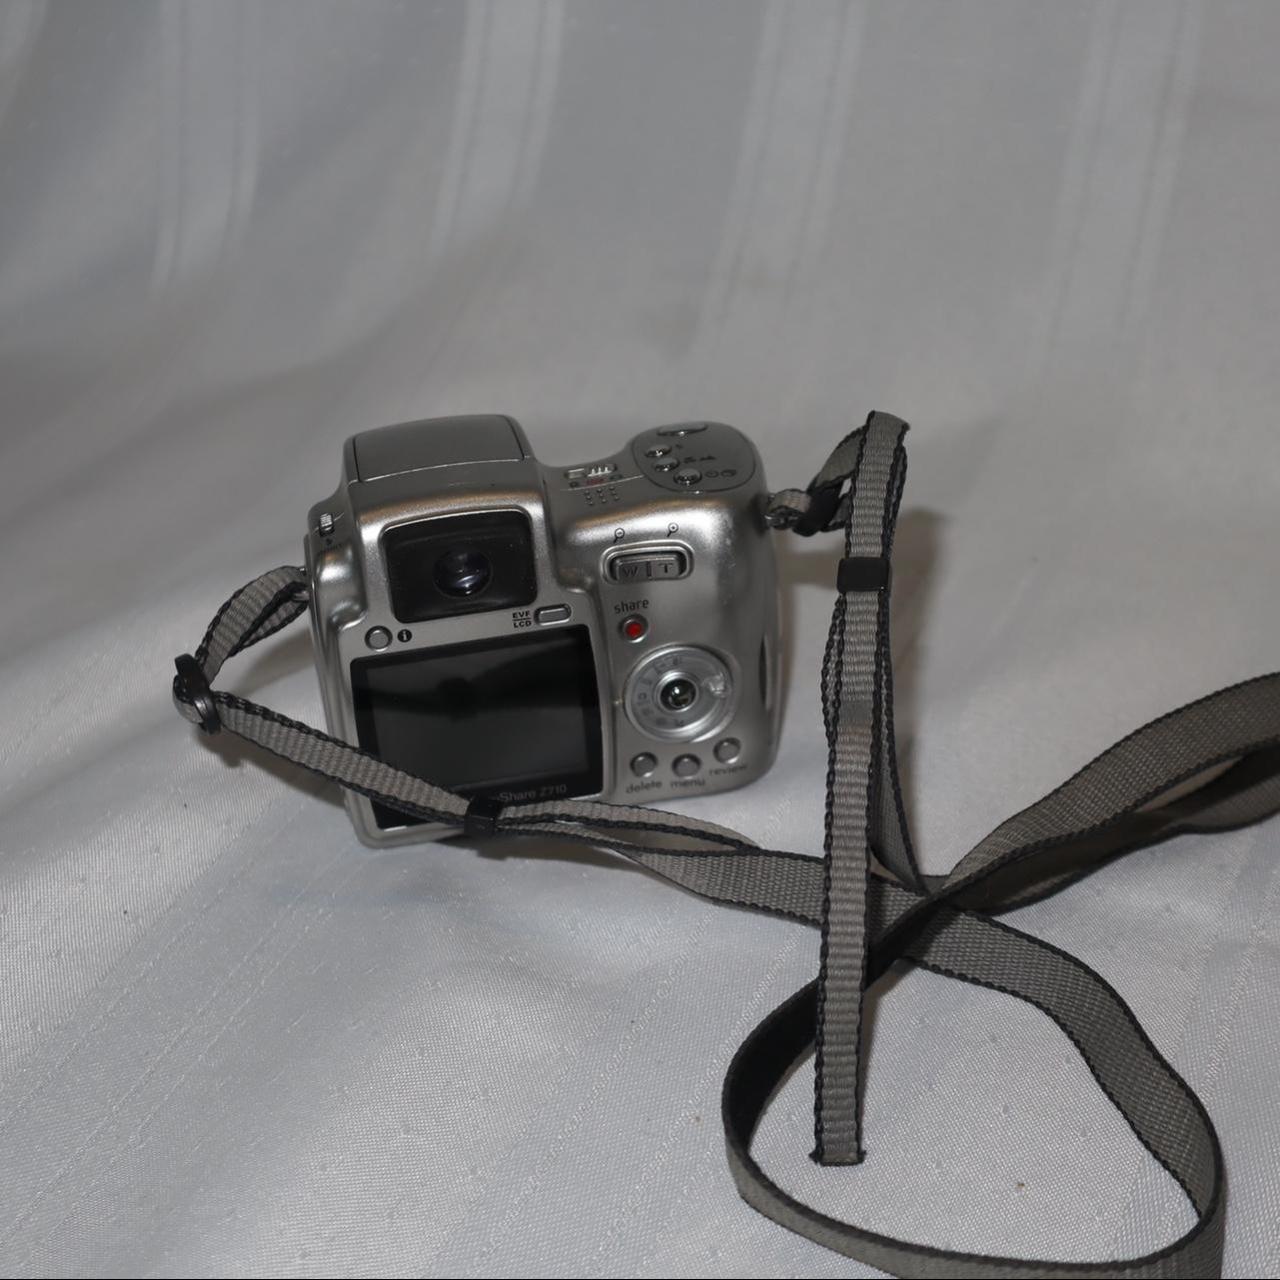 Product Image 2 - Kodak EasyShare Z710 Camera
-10x Optical